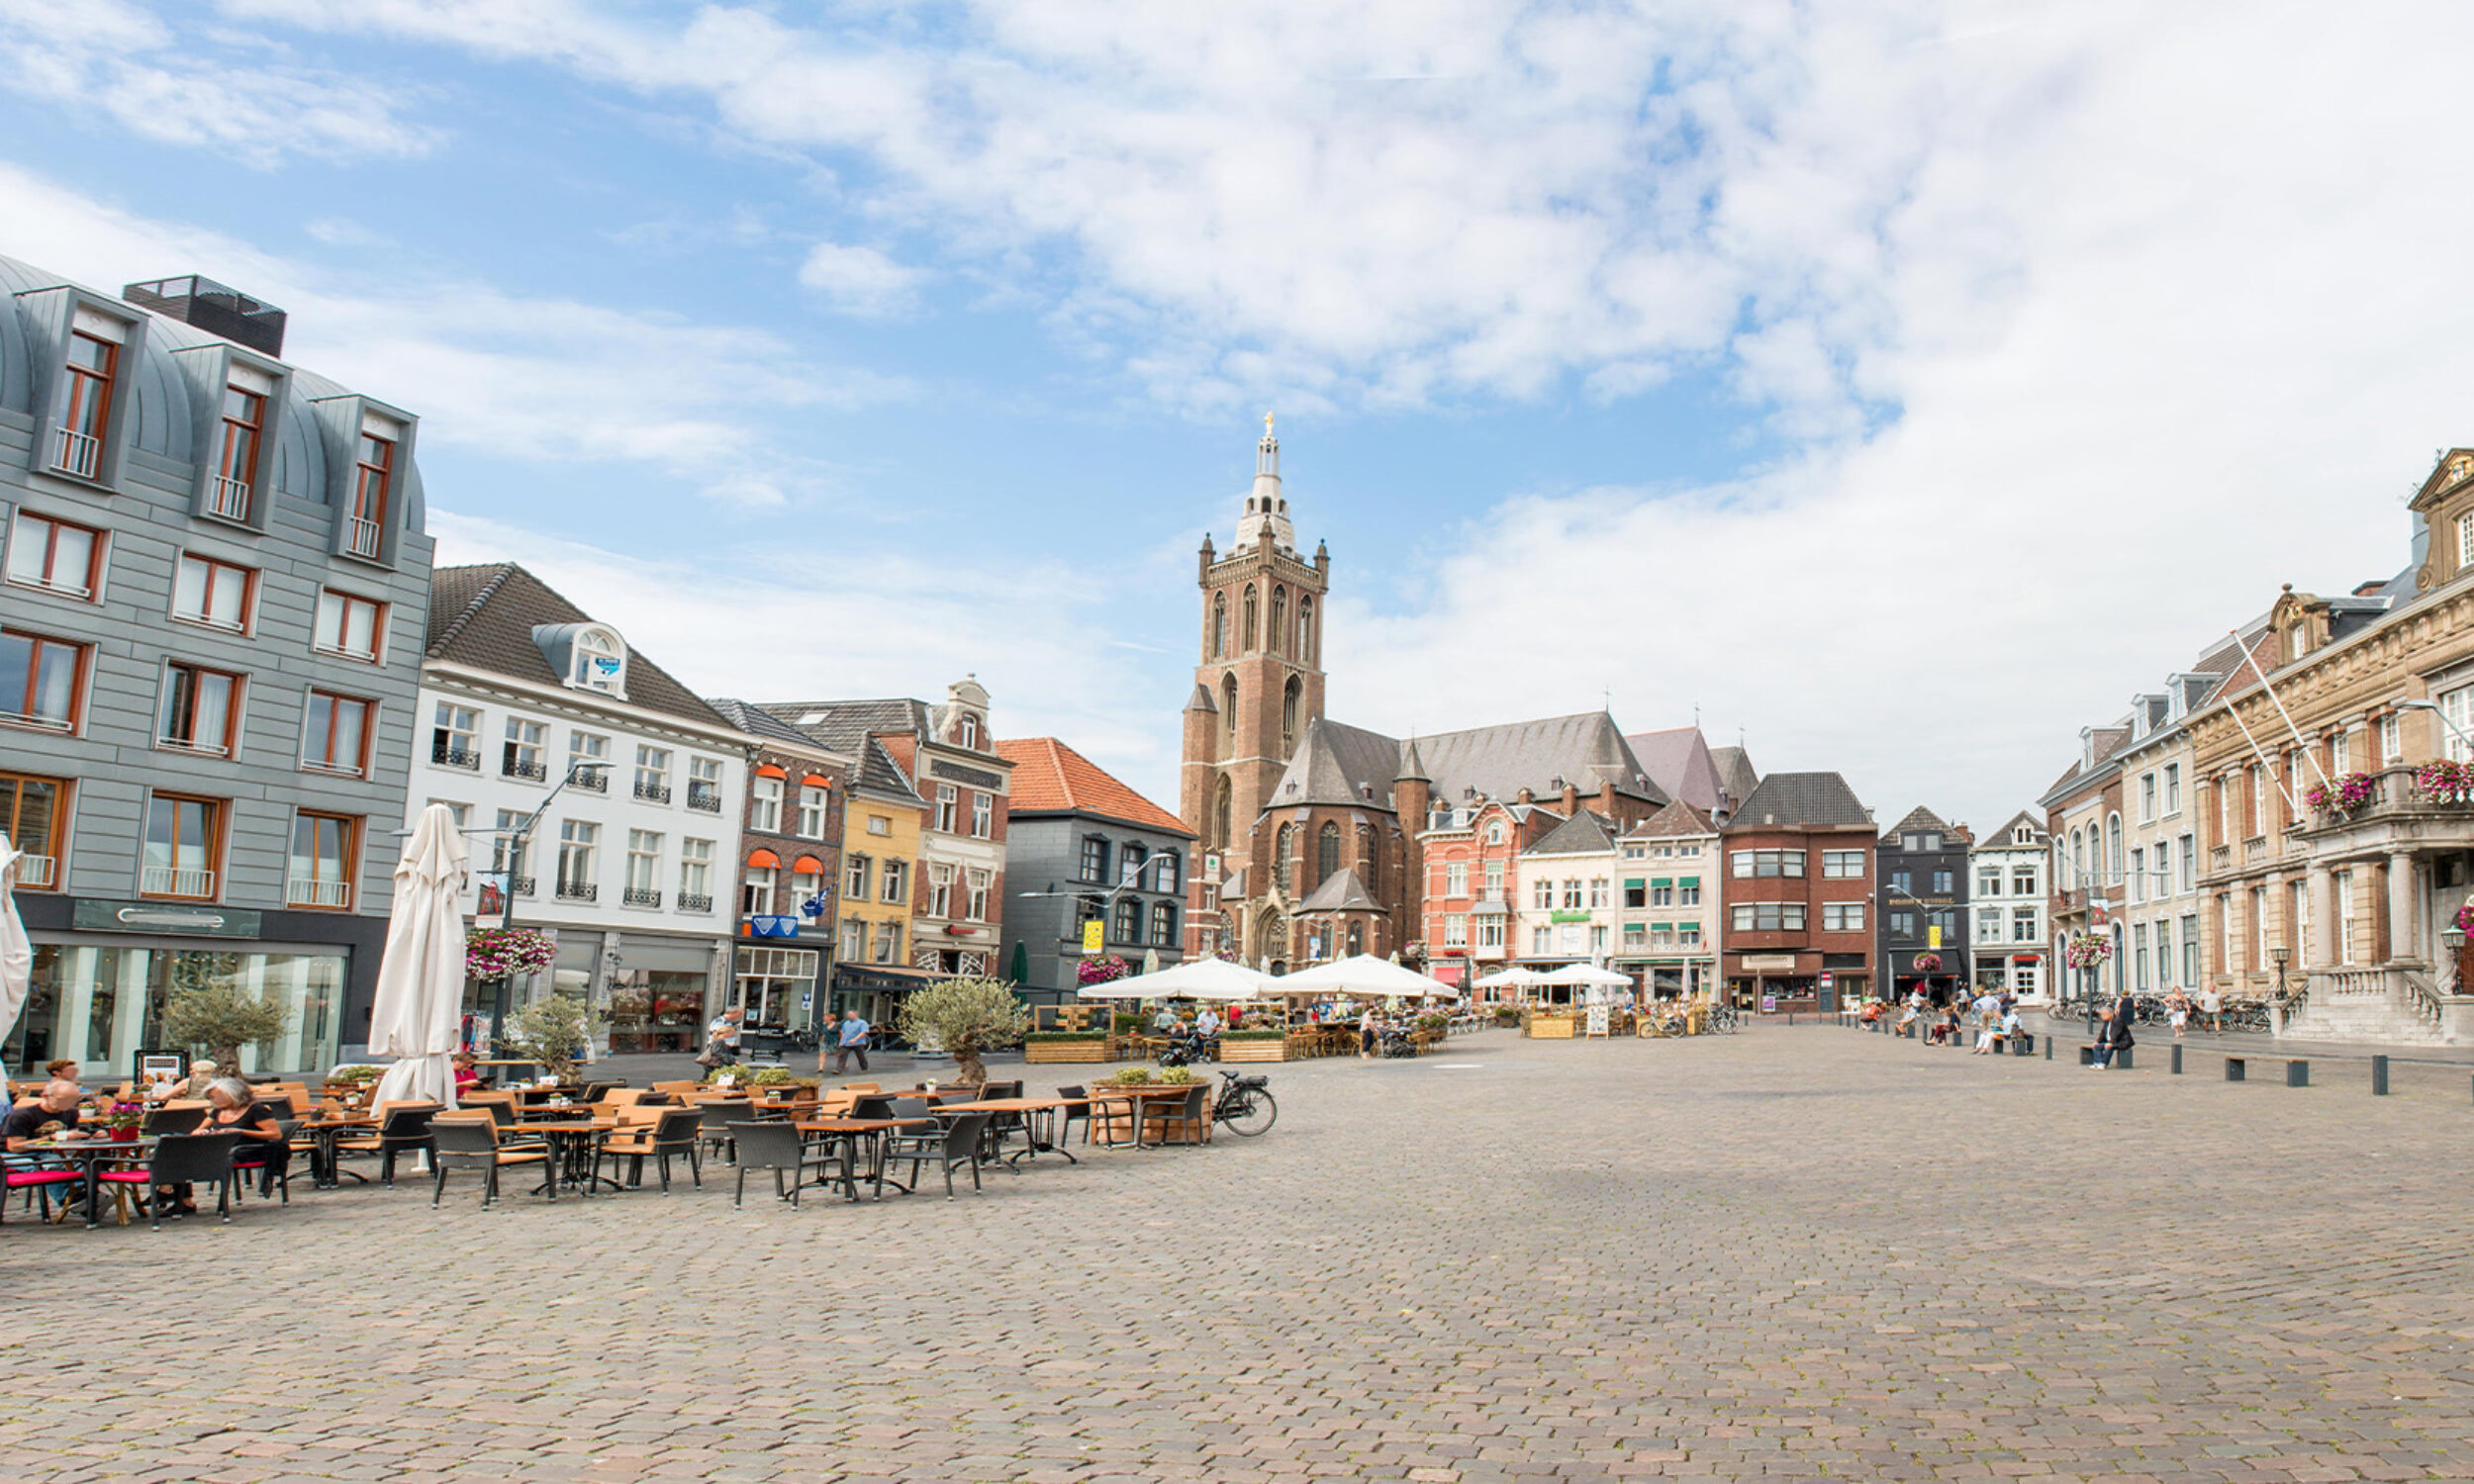 Een sfeervol beeld van het centrum van Roermond, met historische gebouwen en het imposante stadhuis prominent aanwezig op het marktplein.